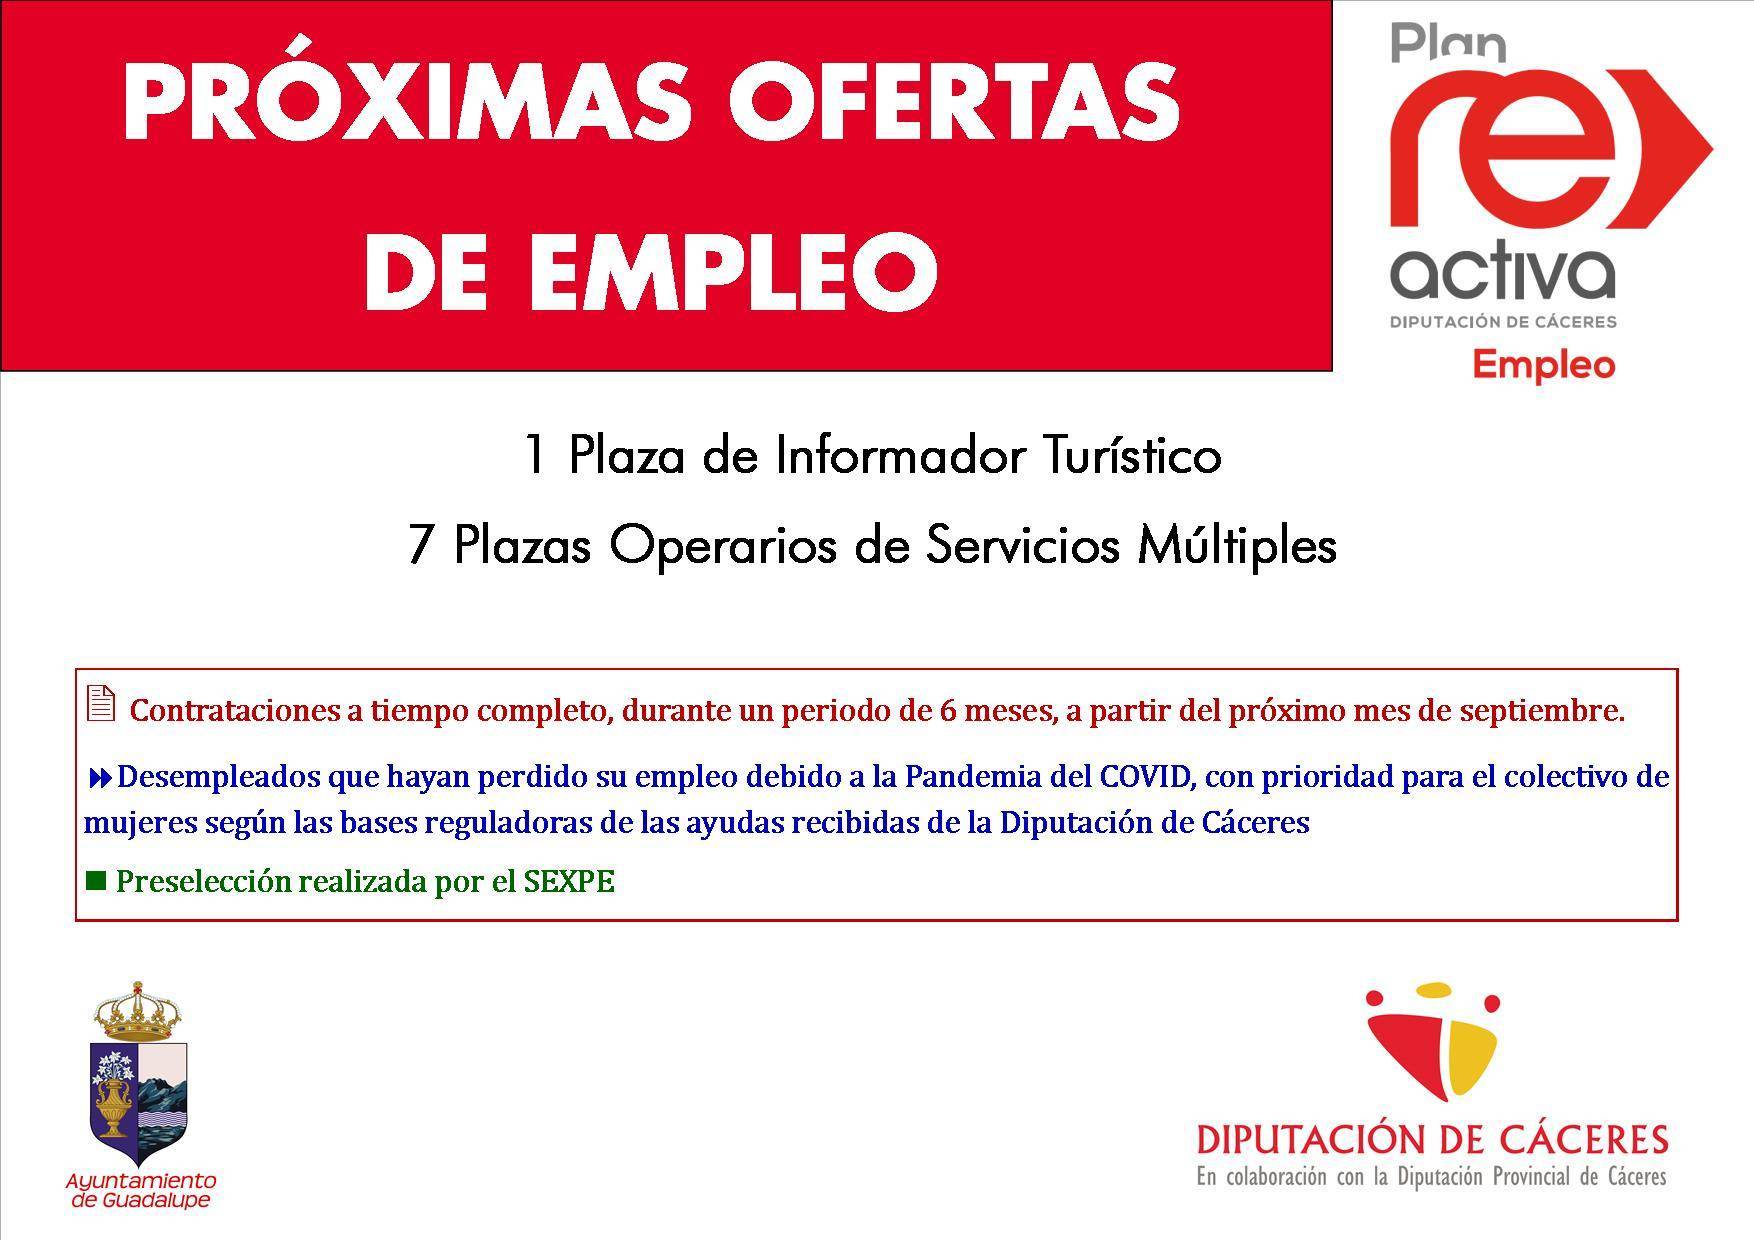 Informador turístico y operarios de servicios múltiples 2020 - Guadalupe (Cáceres)